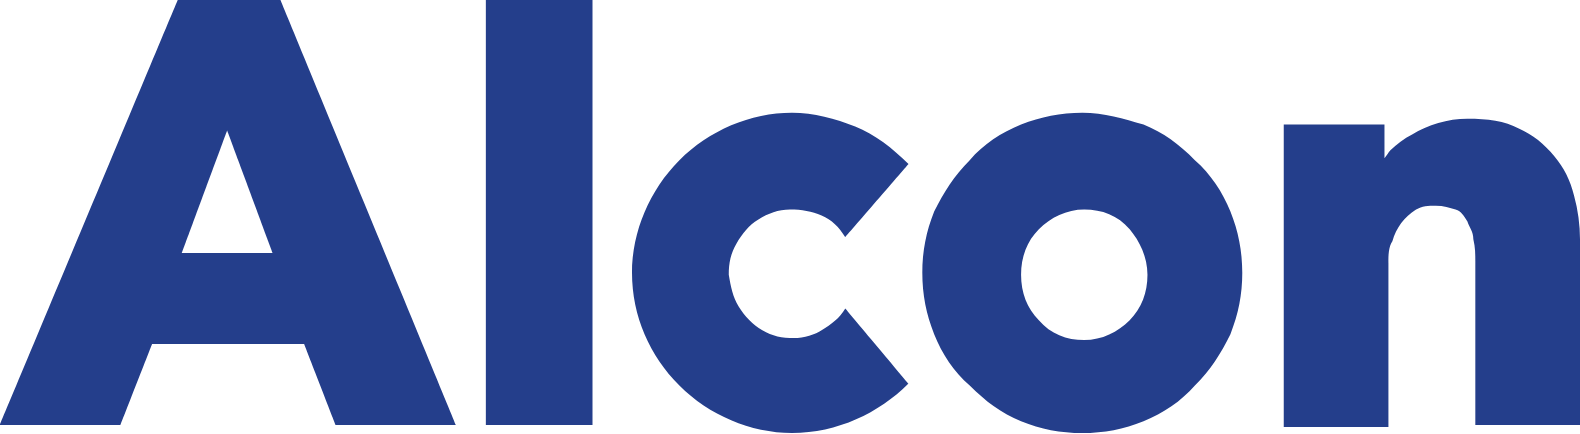 Alcon-Vision-Logo